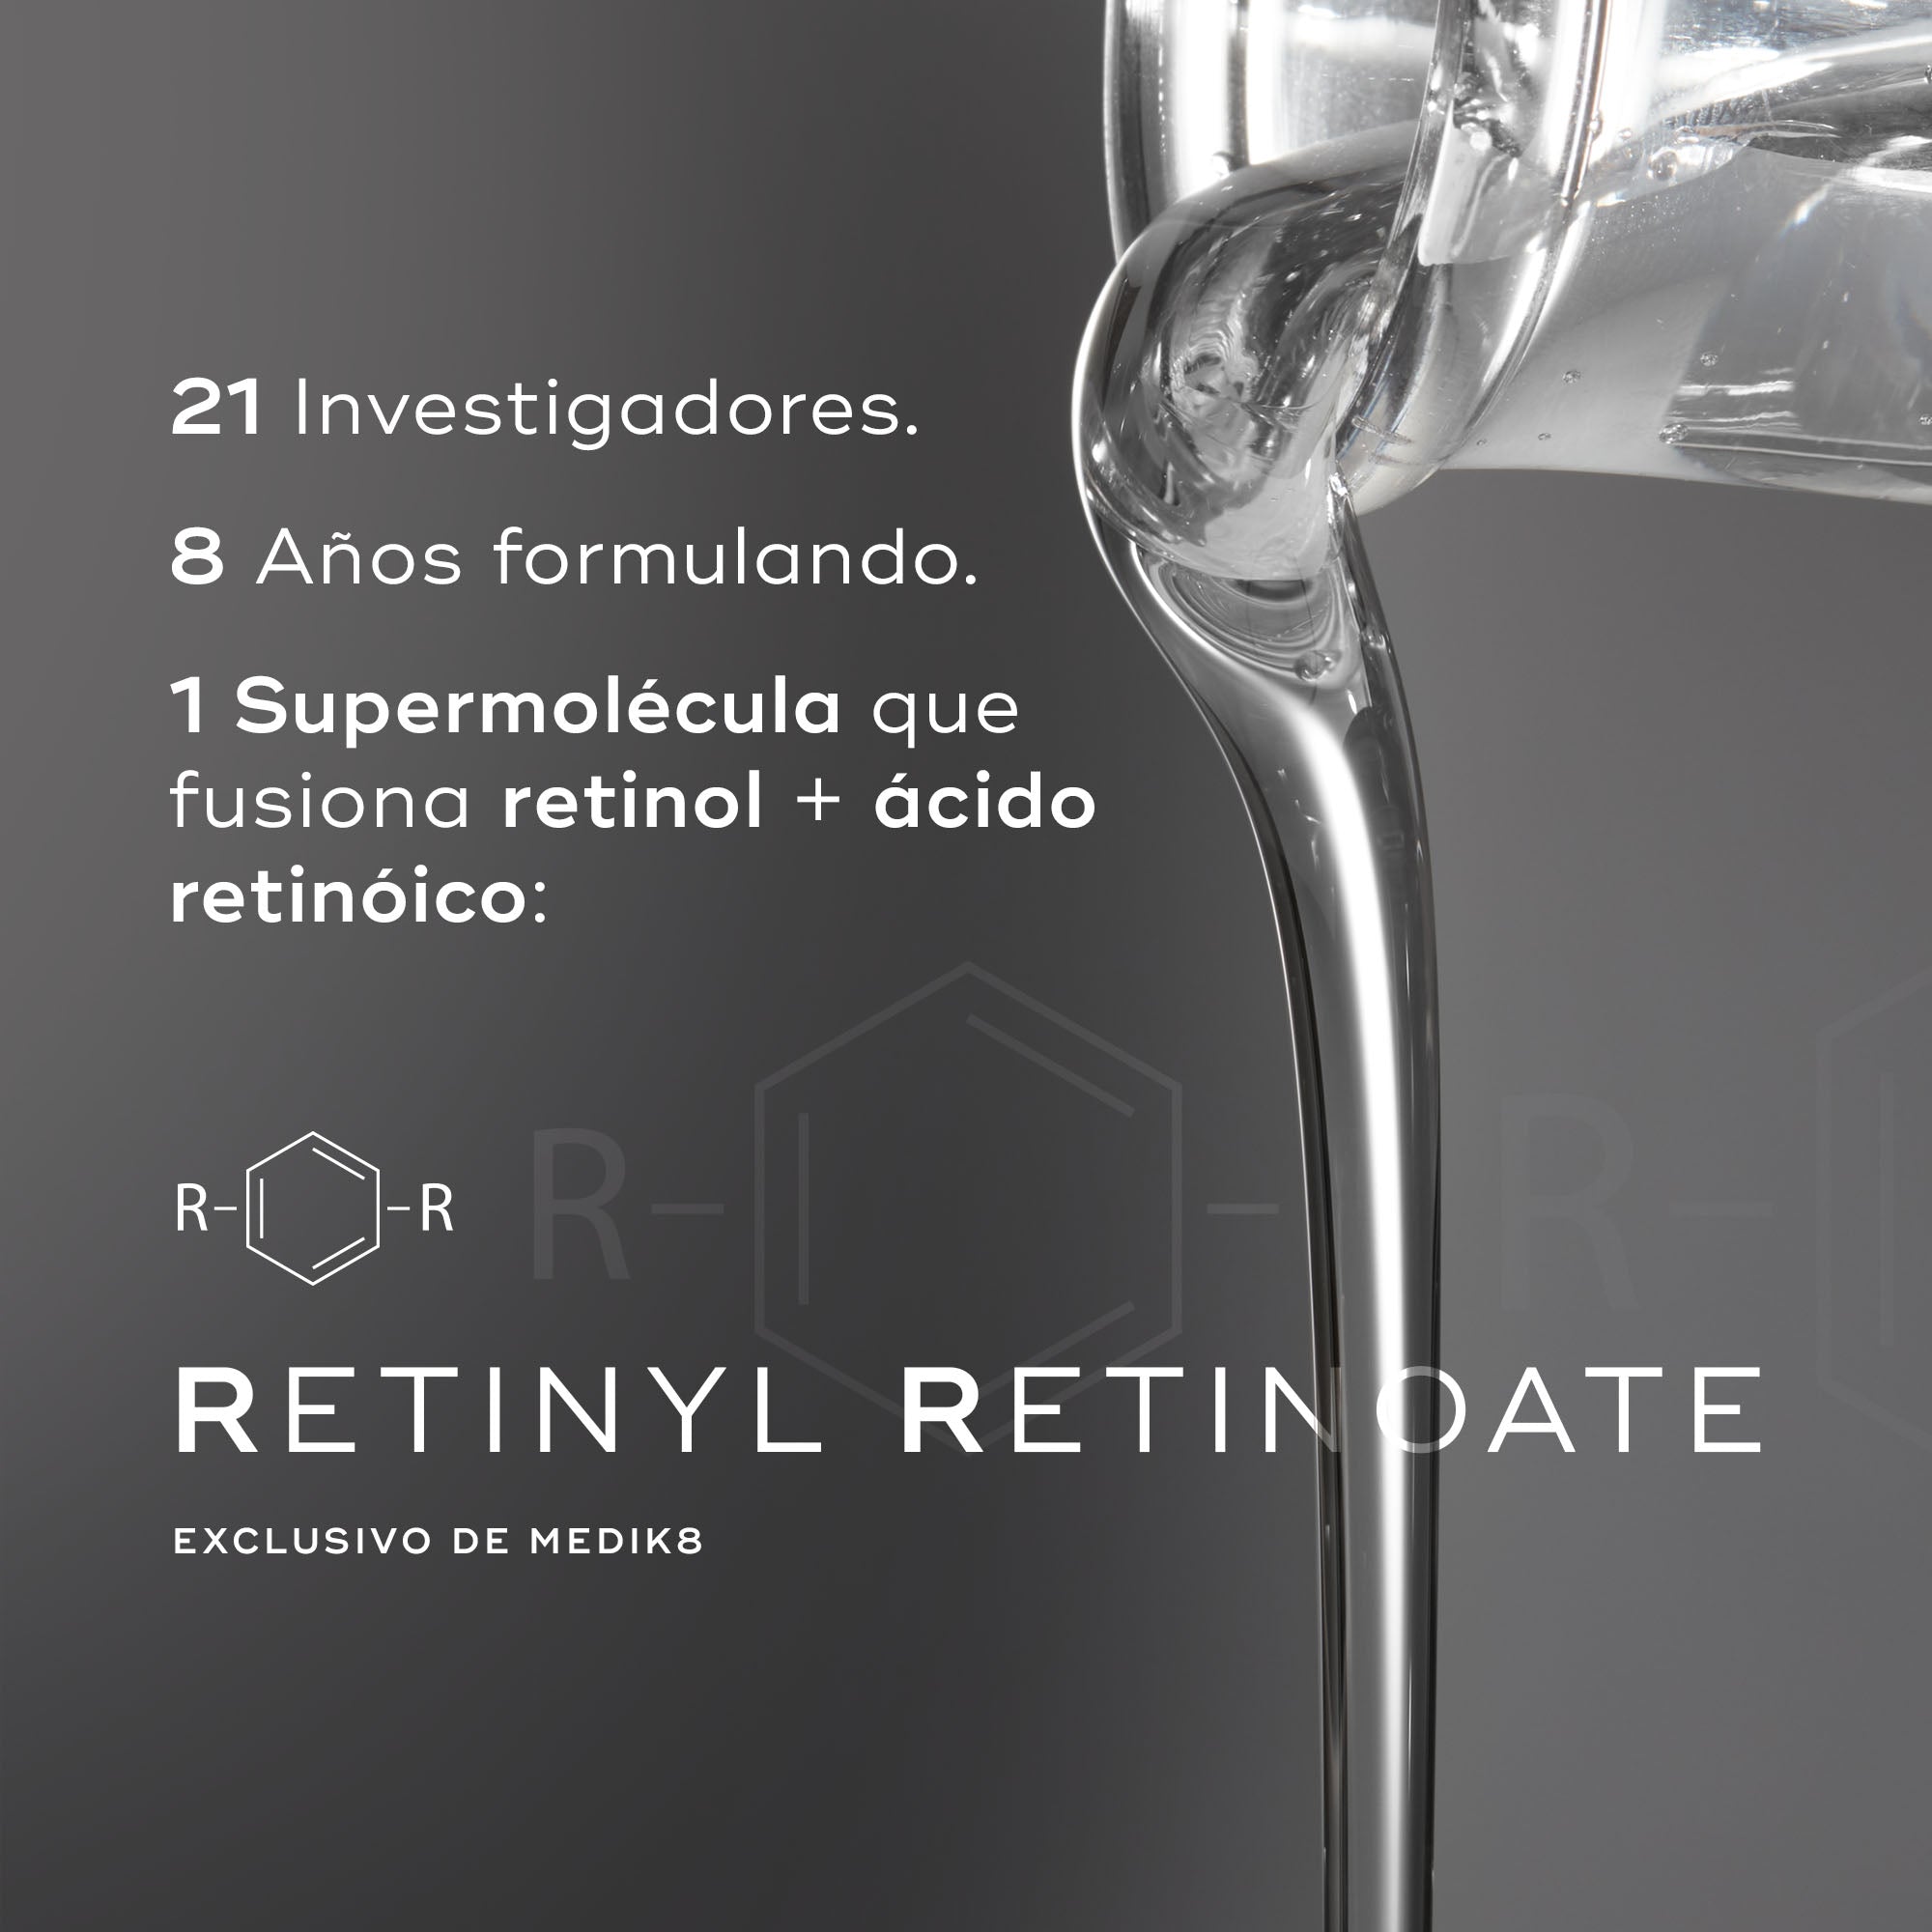 r-Retinoate Intense serum Vitamina A